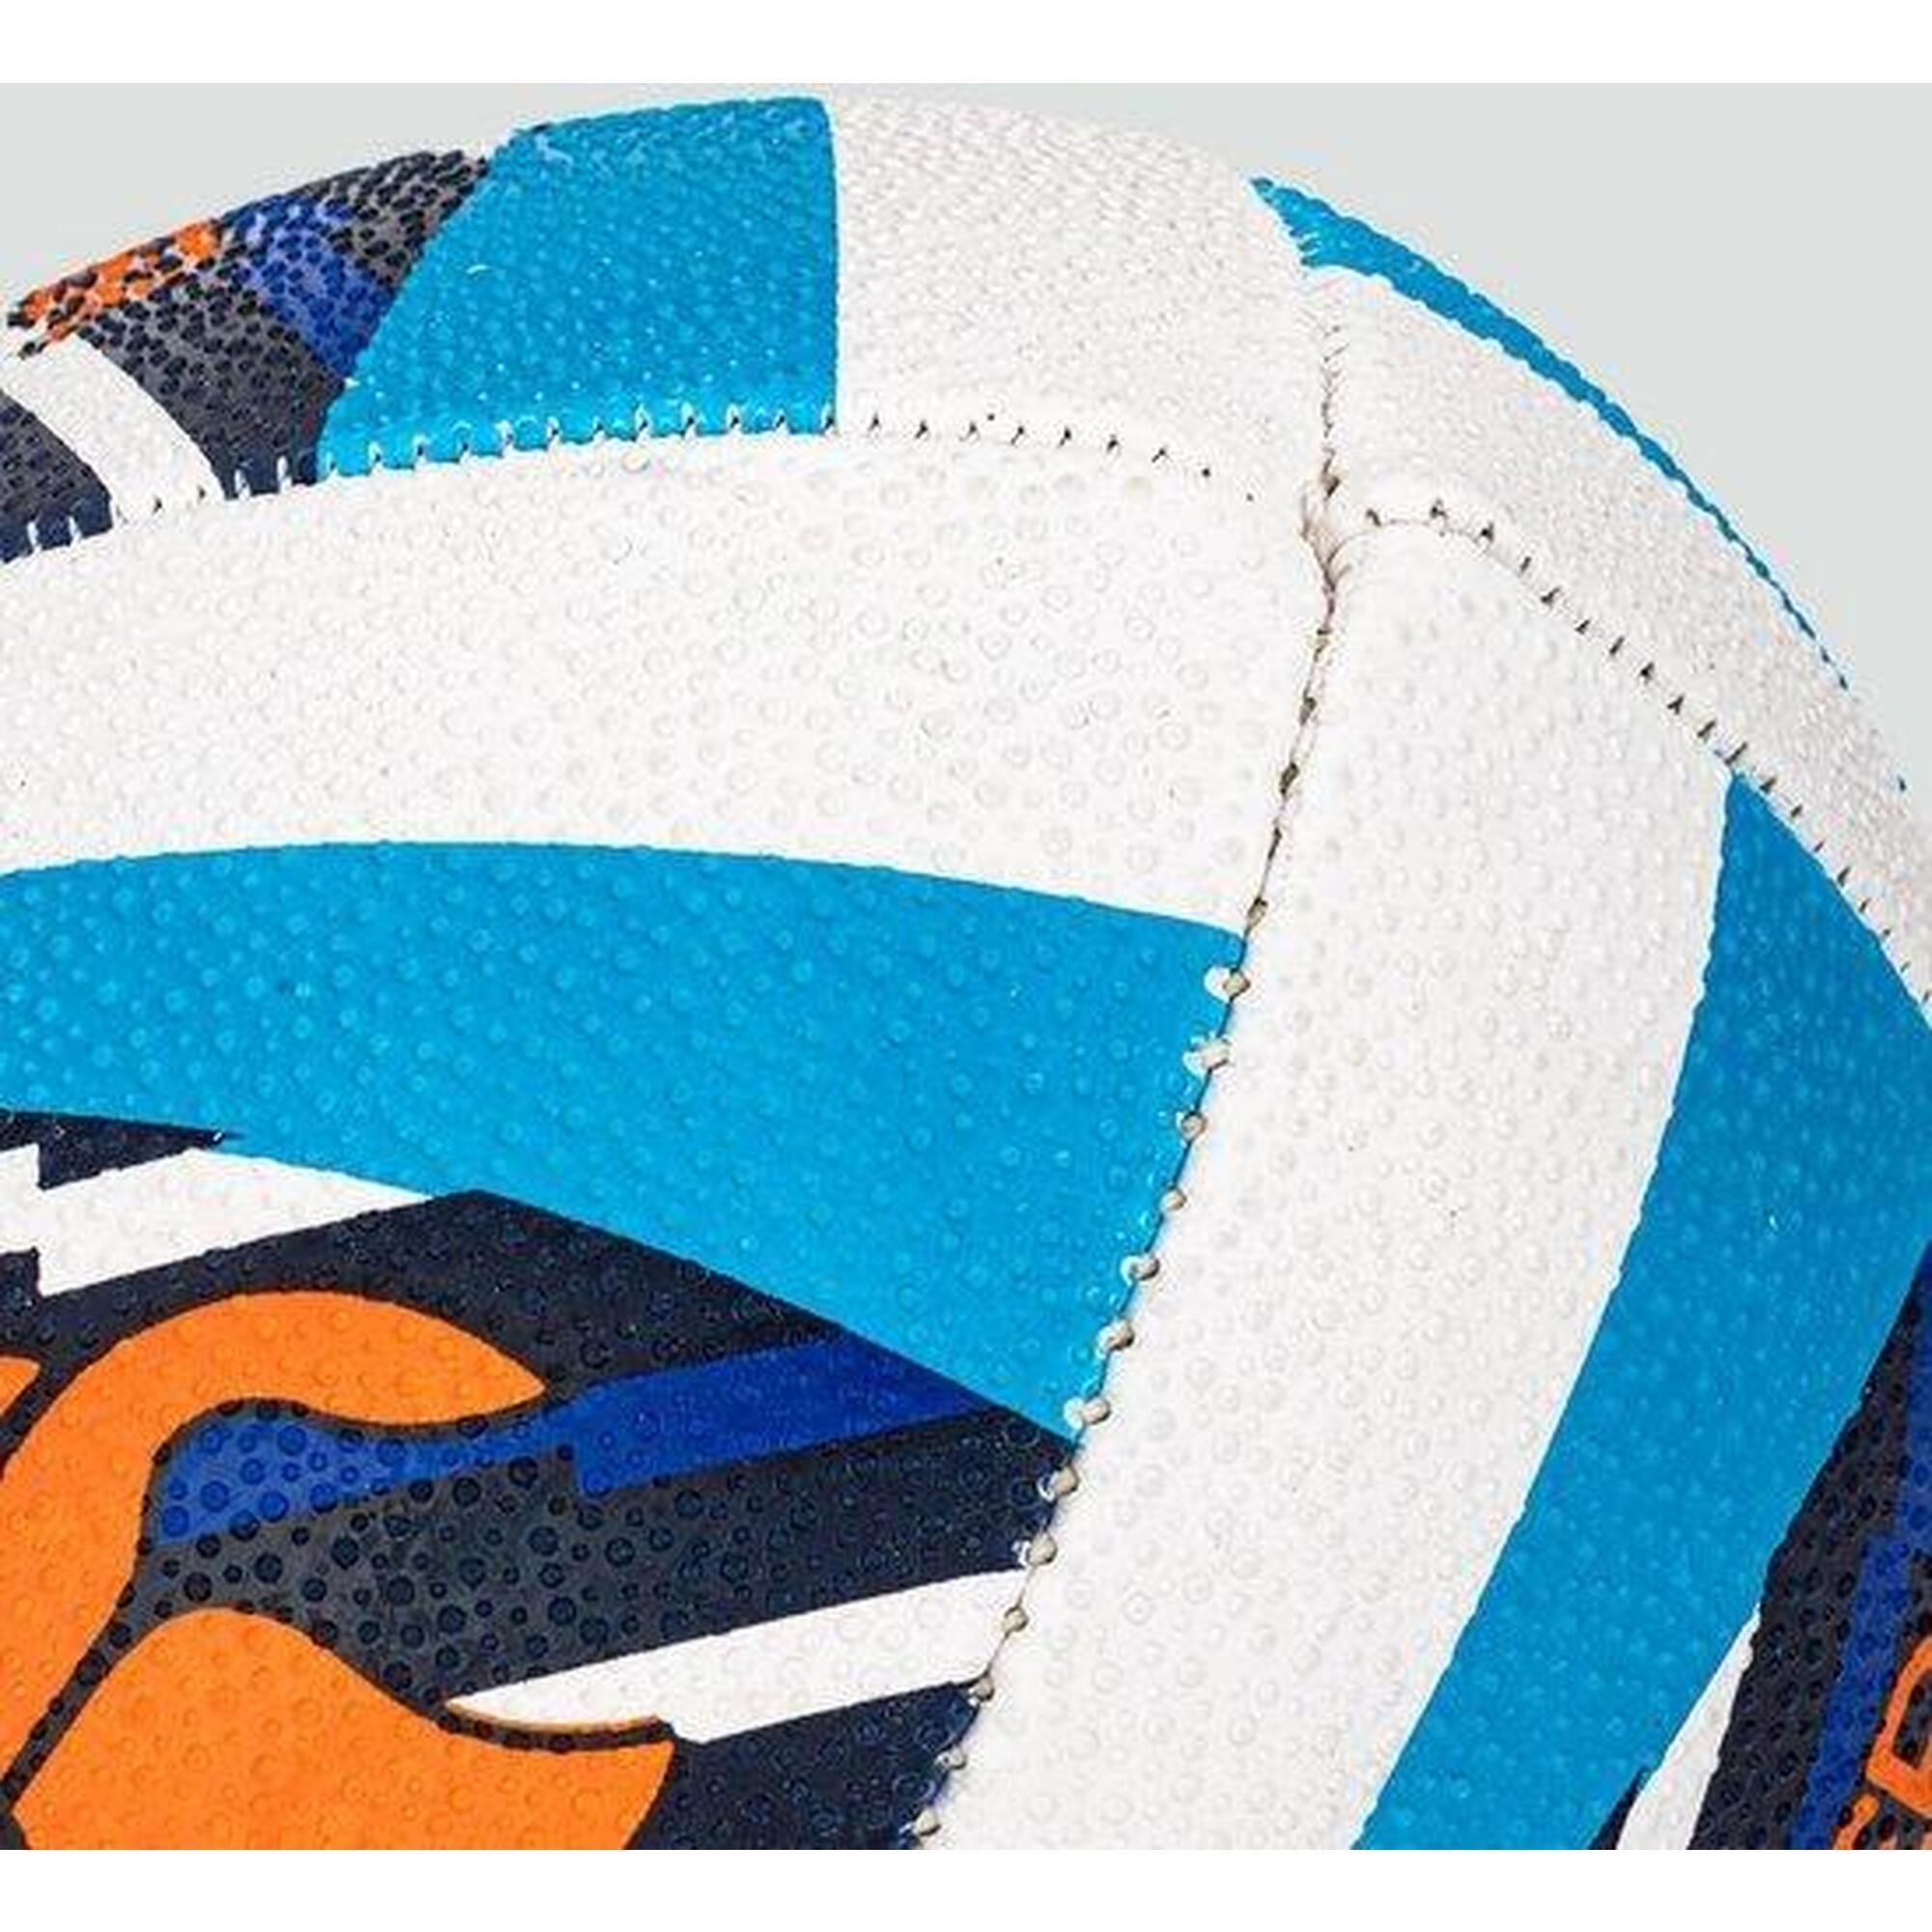 Ballon de rugby - unisexe Bleu Orange